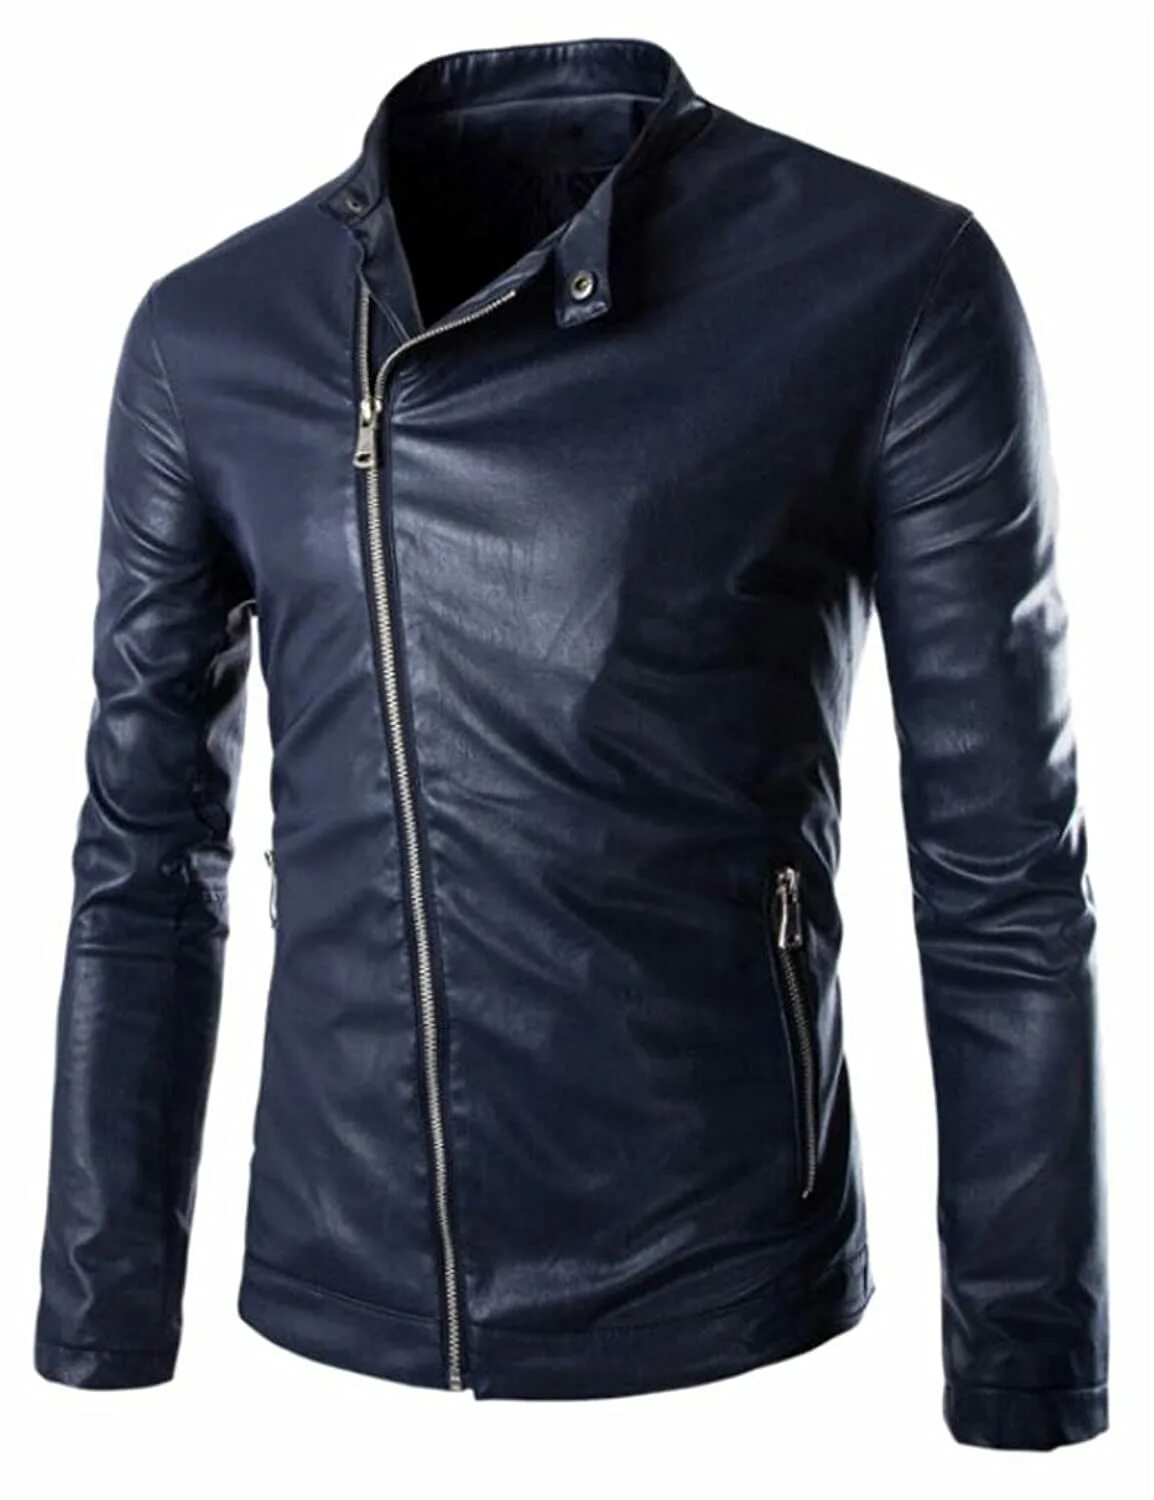 Кожаная куртка слим фит. Куртка MCR Slim Fit мужская кожаная синяя. Куртка David Outwear Salvador Leather Jacket. Кожаная куртка мужская на молнии.